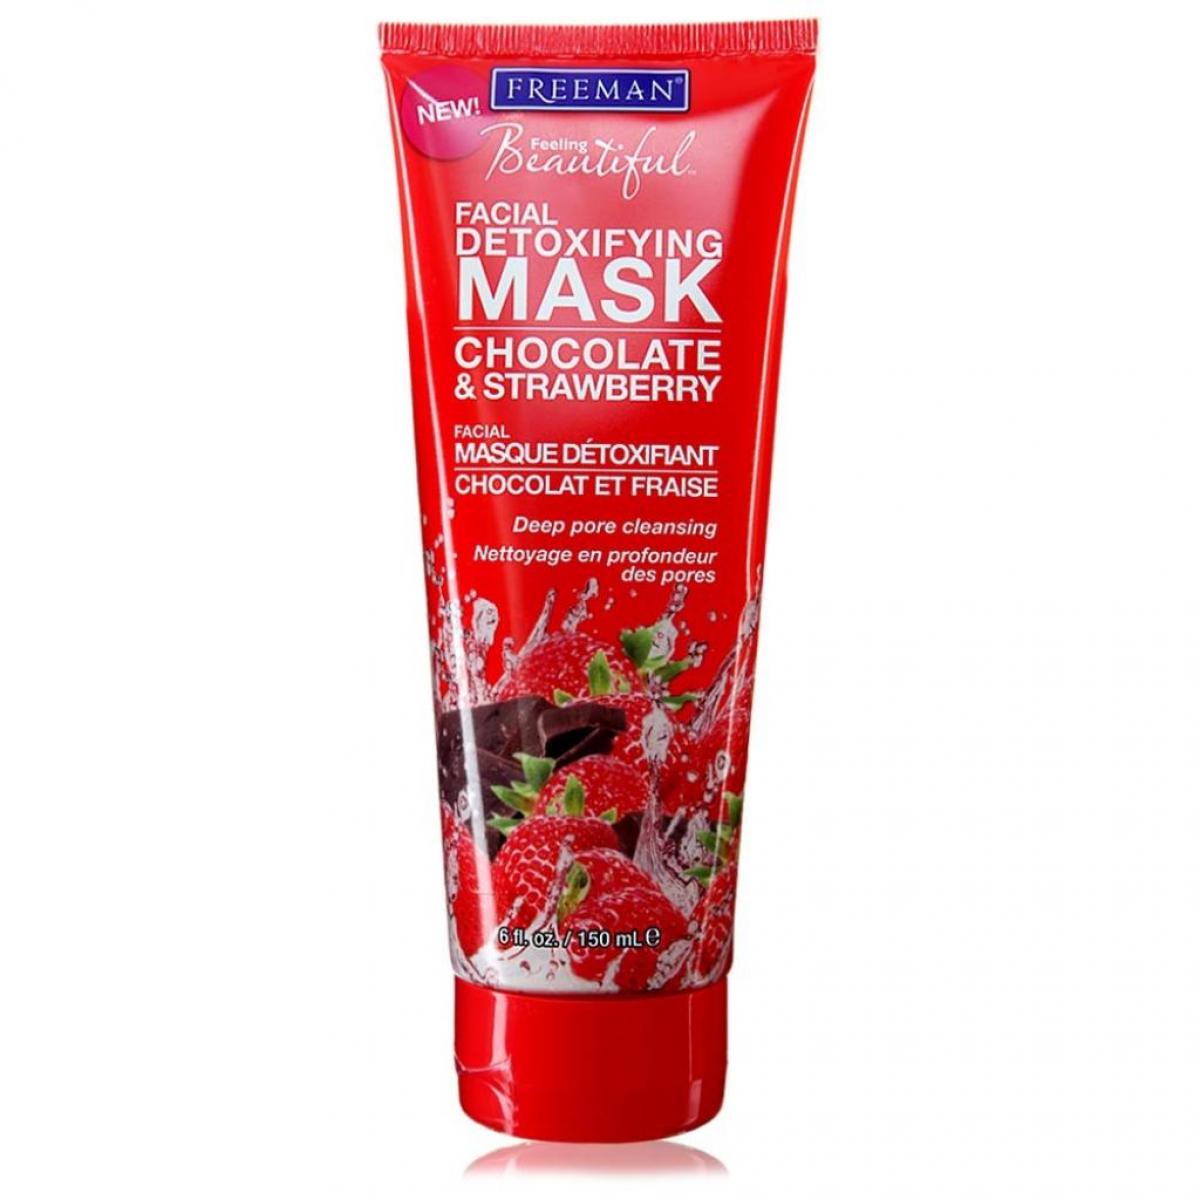 ماسک خاک رسى شکلات و توت فرنگى - Chocolate & Strawberry Facial Detoxifying Clay Mask